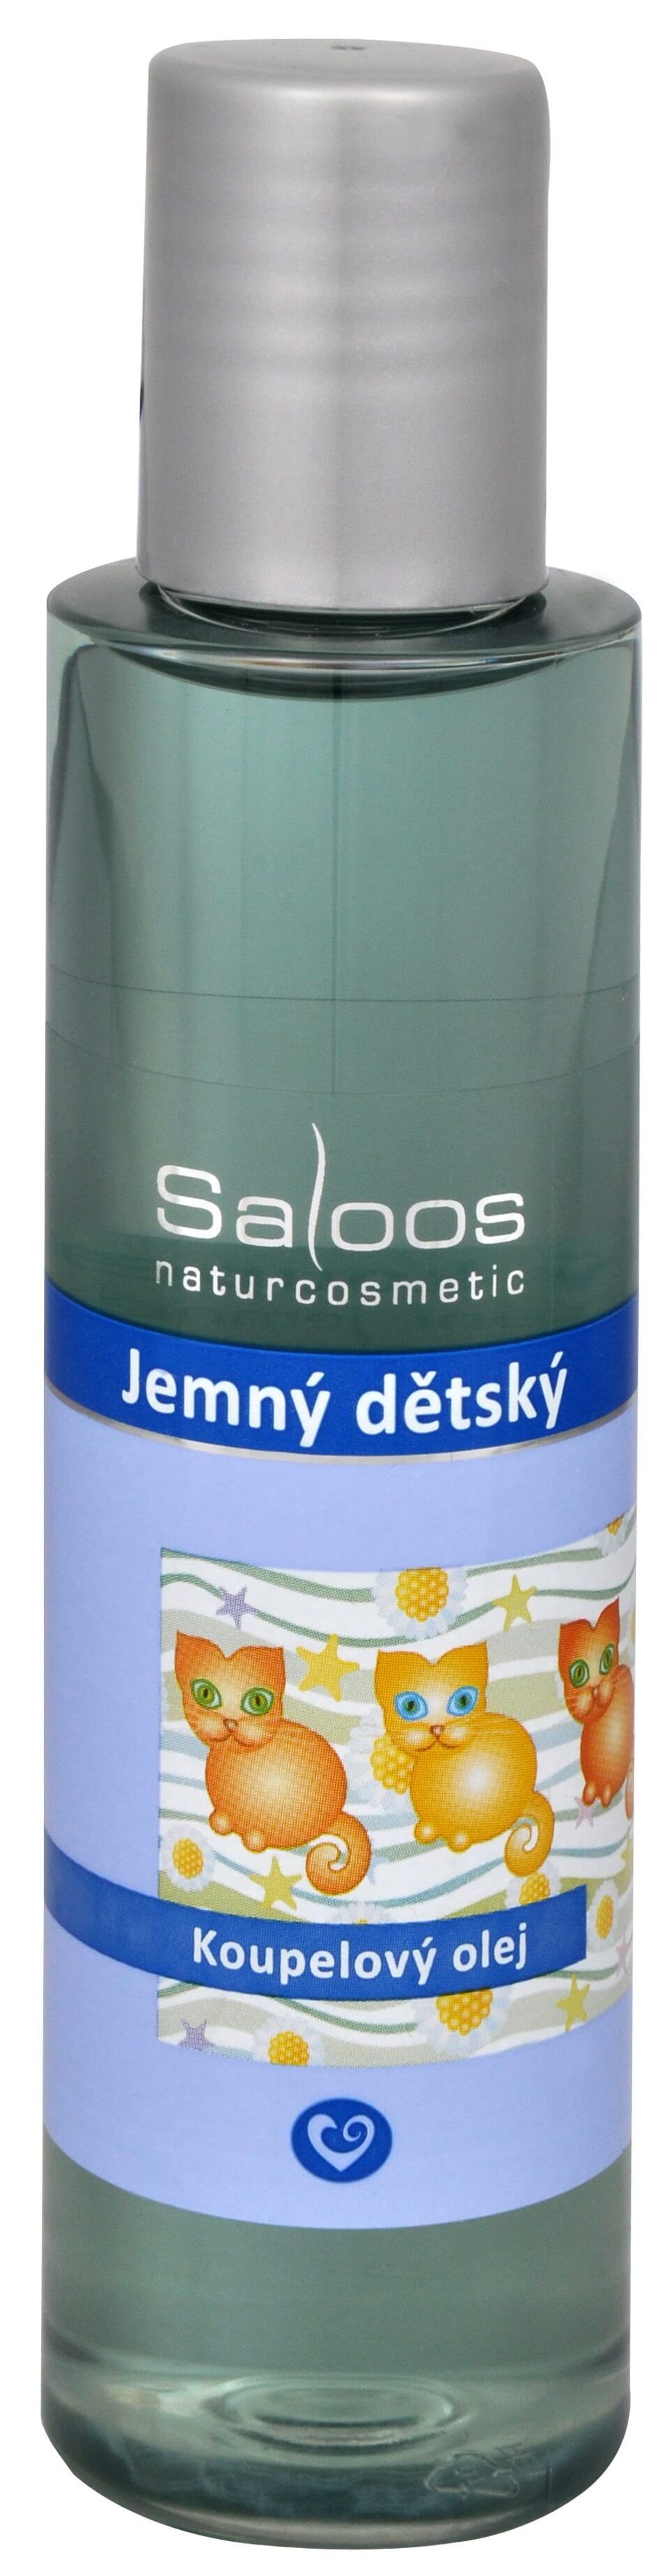 Zobrazit detail výrobku Saloos Koupelový olej - Jemný dětský 500 ml